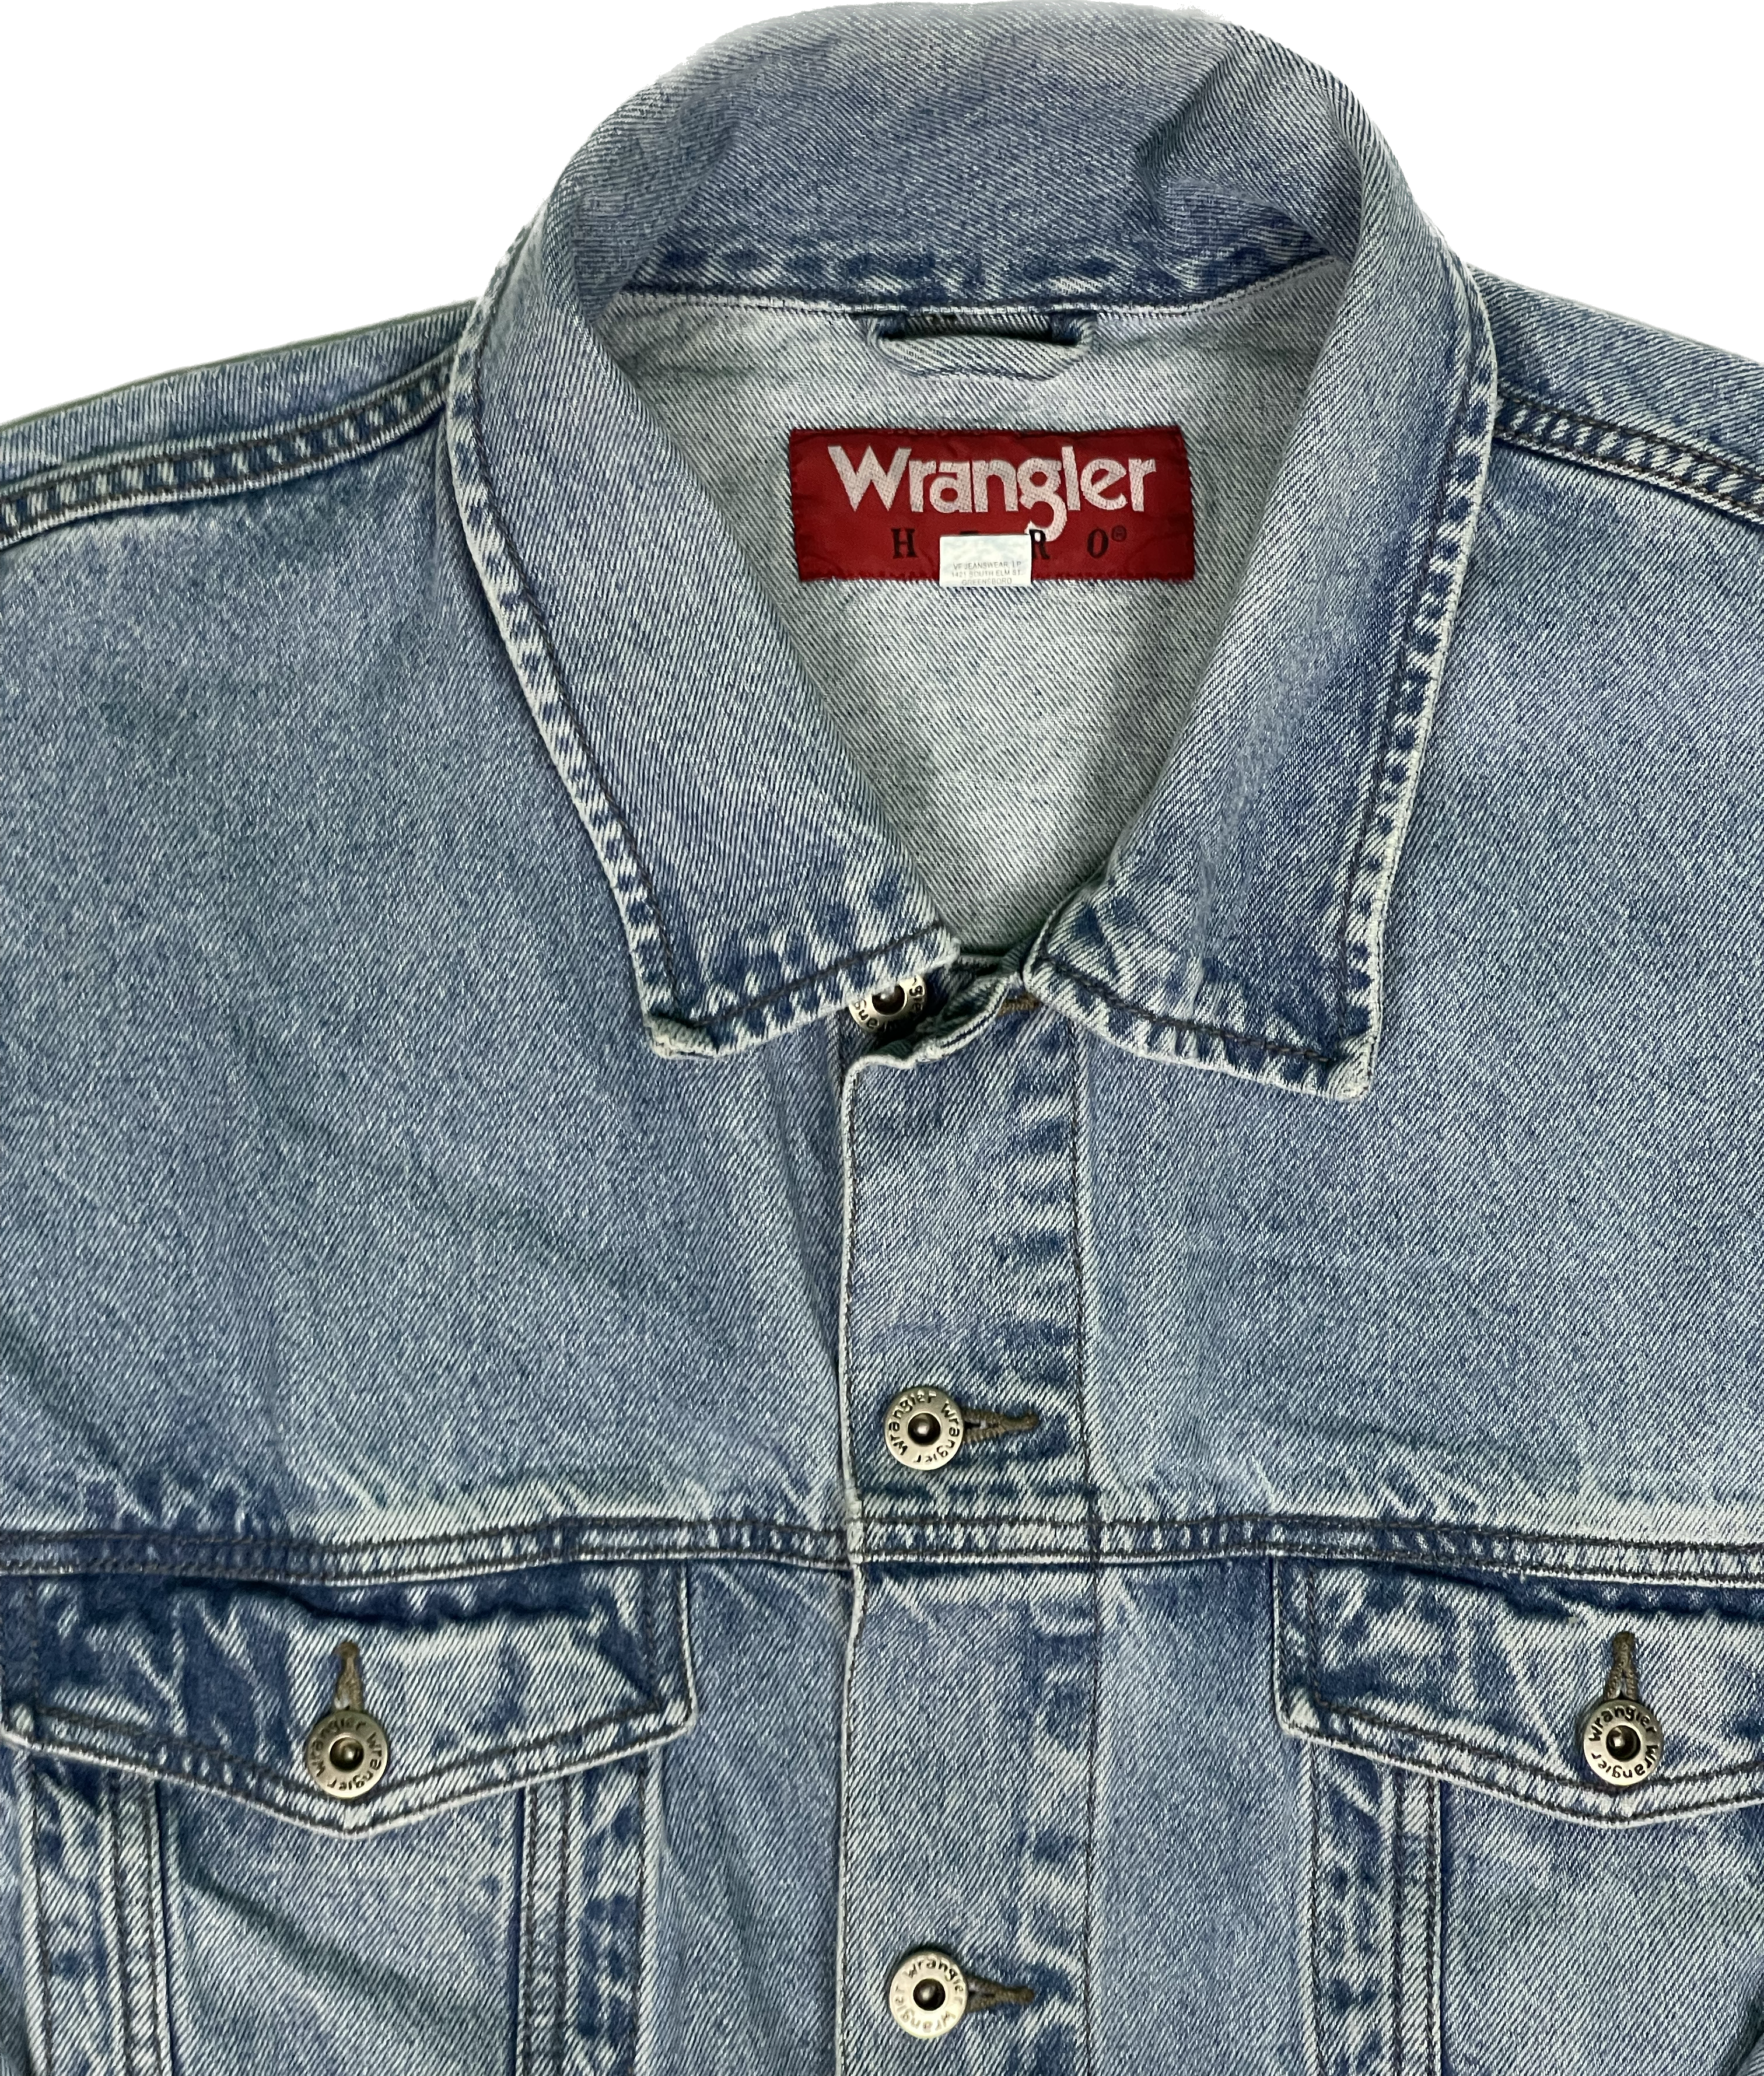 Wrangler Vintage Jeans Jacket